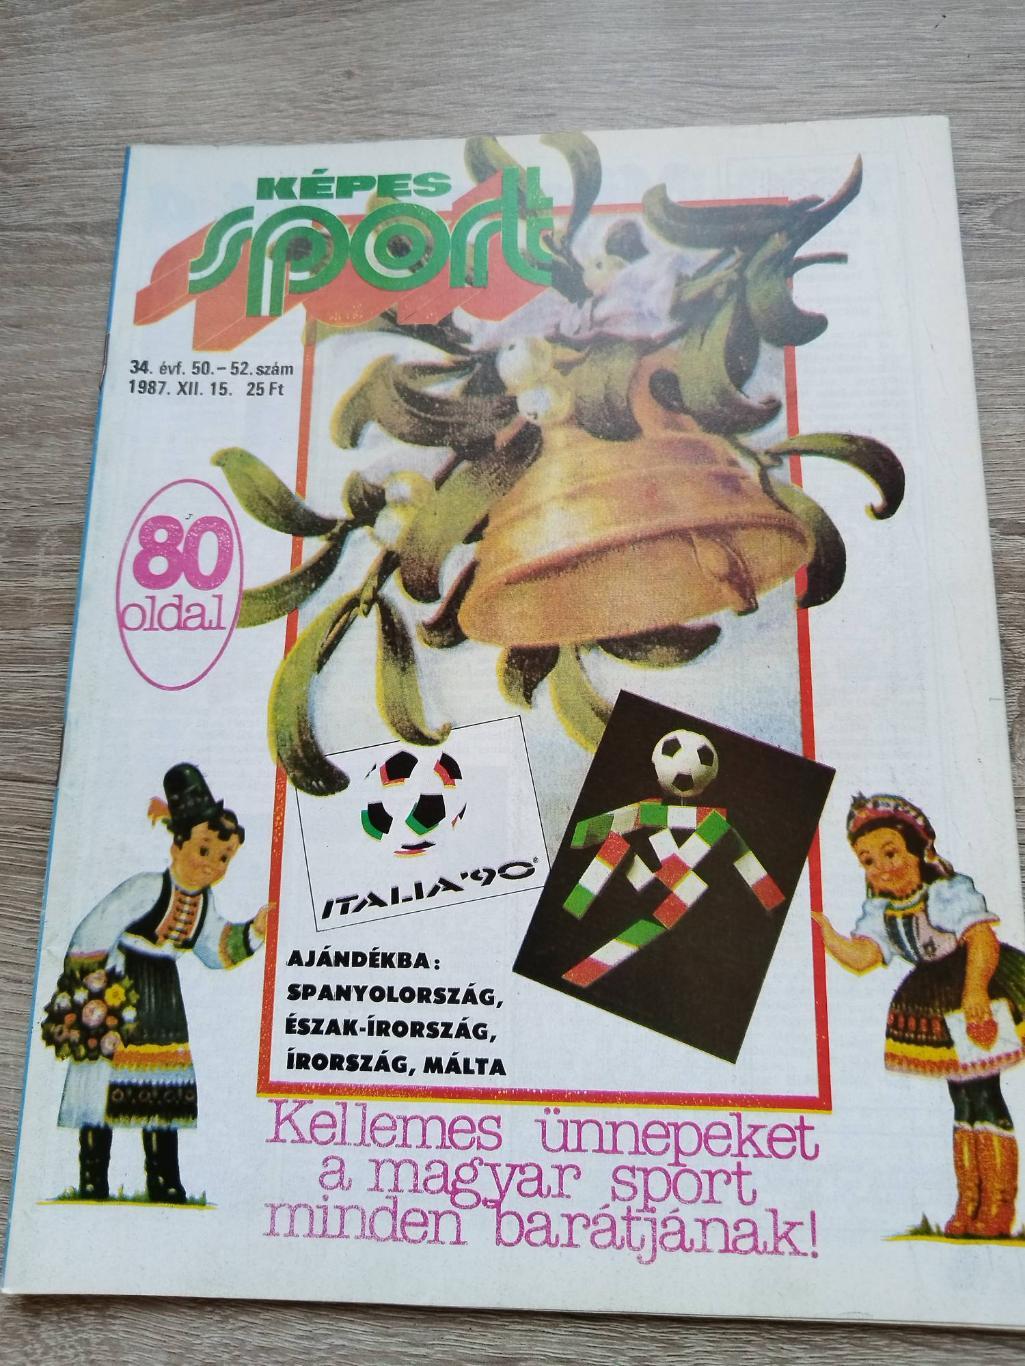 Журнал.Kepes sport (Кепеш спорт). Утолщенный двойной номер. Итоговый за 1987